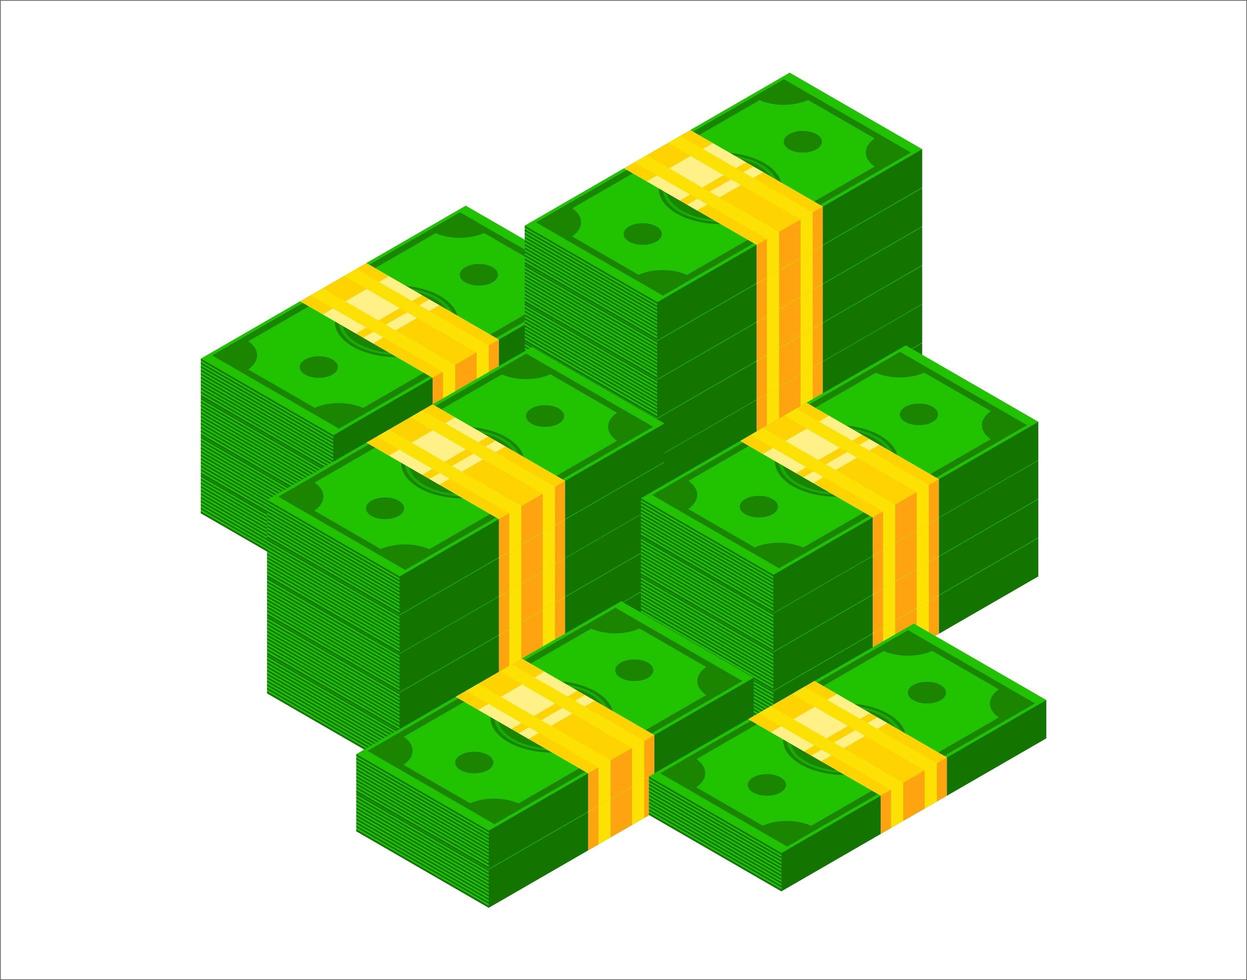 tas d'argent. icône de billet de dollar isométrique. illustration vectorielle de 3 d dollar bundle empilés vecteur